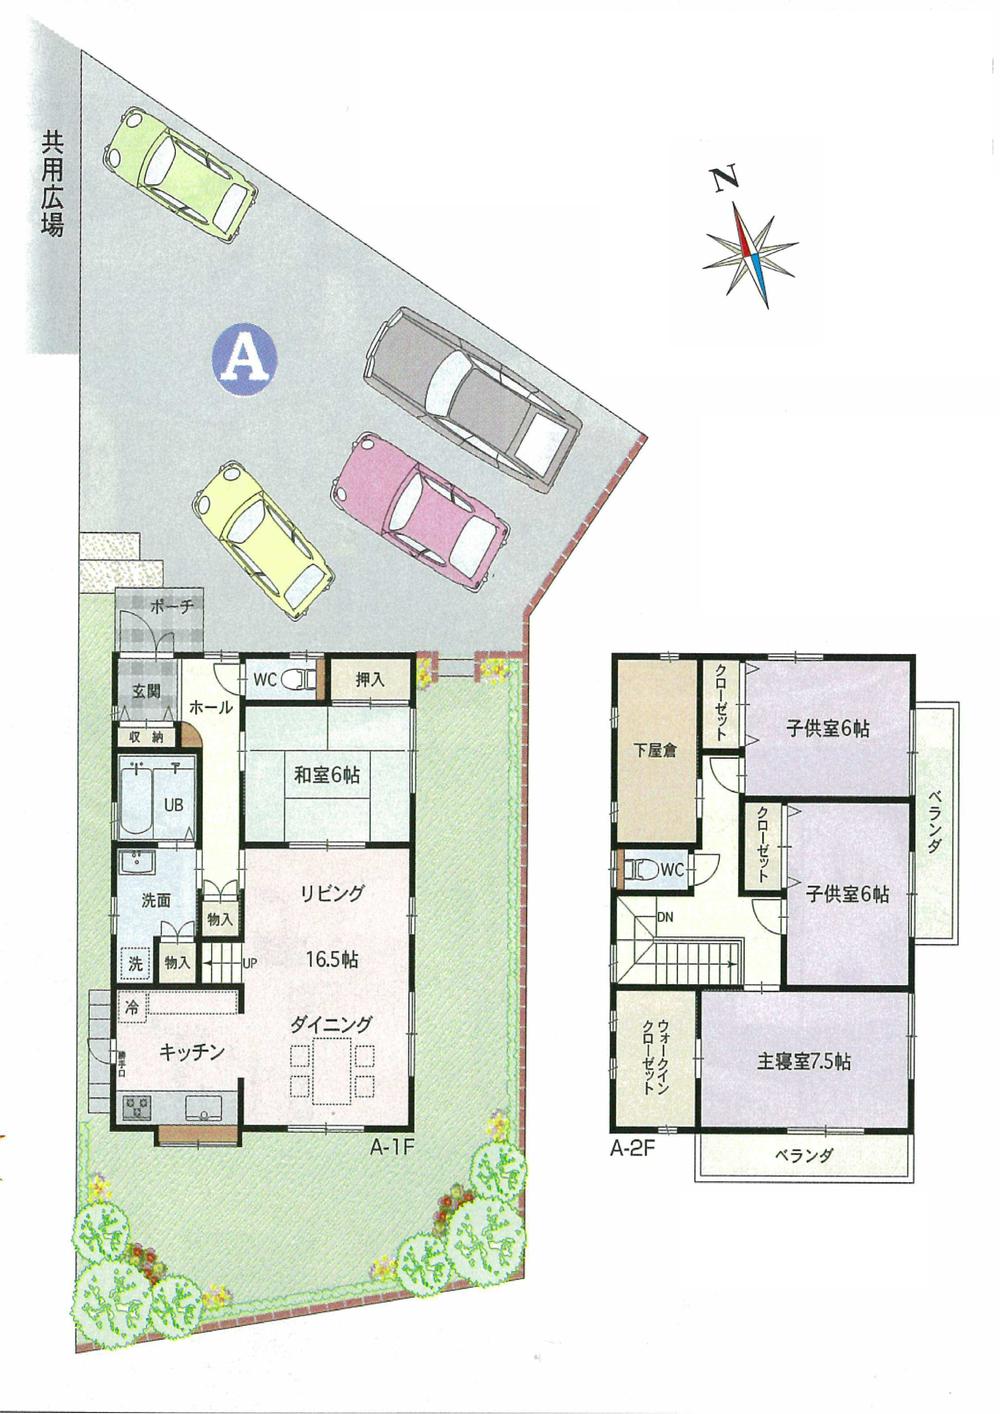 Compartment view + building plan example. Building plan example (A partition plan example) 4LDK, Land price 12.8 million yen, Land area 305.28 sq m , Building price 22,890,000 yen, Building area 110.96 sq m